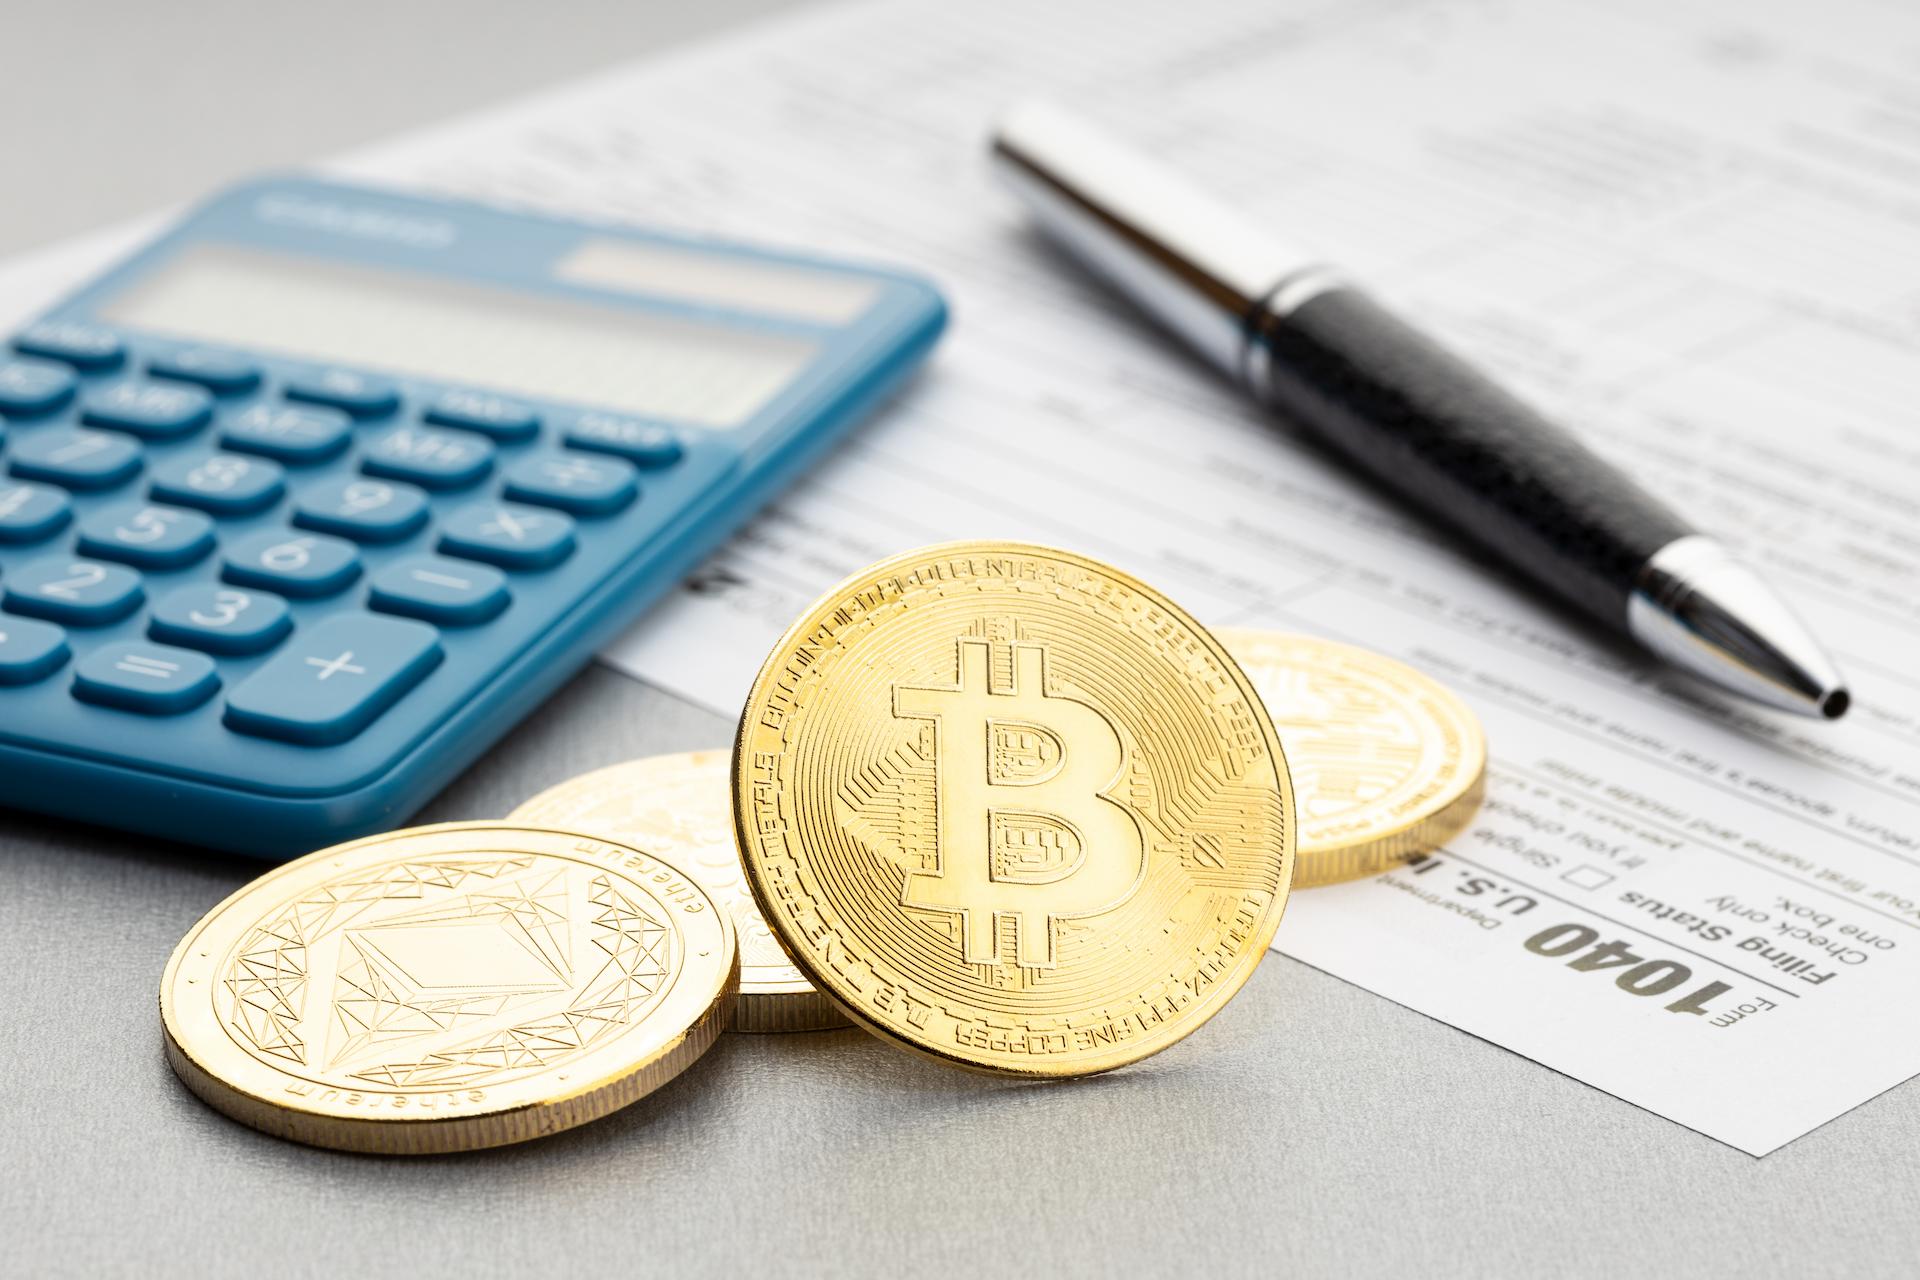 Some bitcoin next to a calculator when doing crypto tax